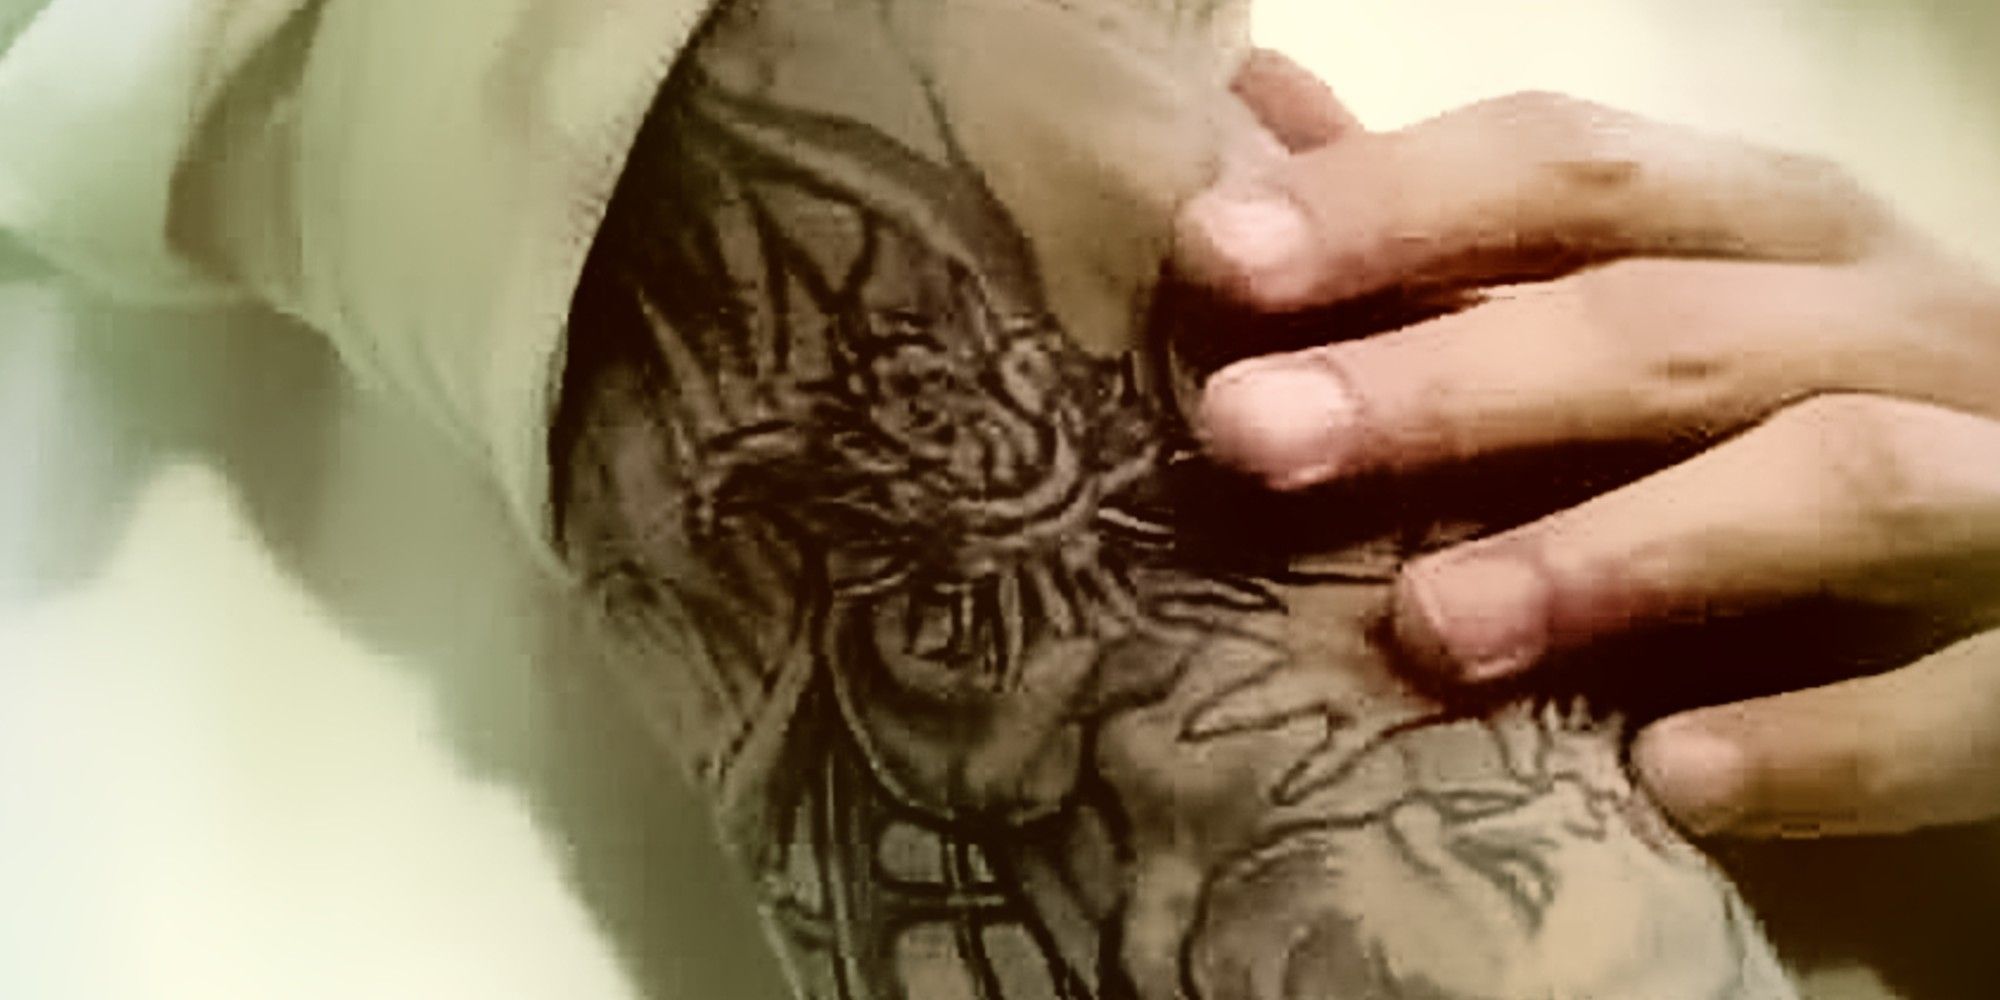 Michael's tattoo. Map on the skin. #PrisonBreak